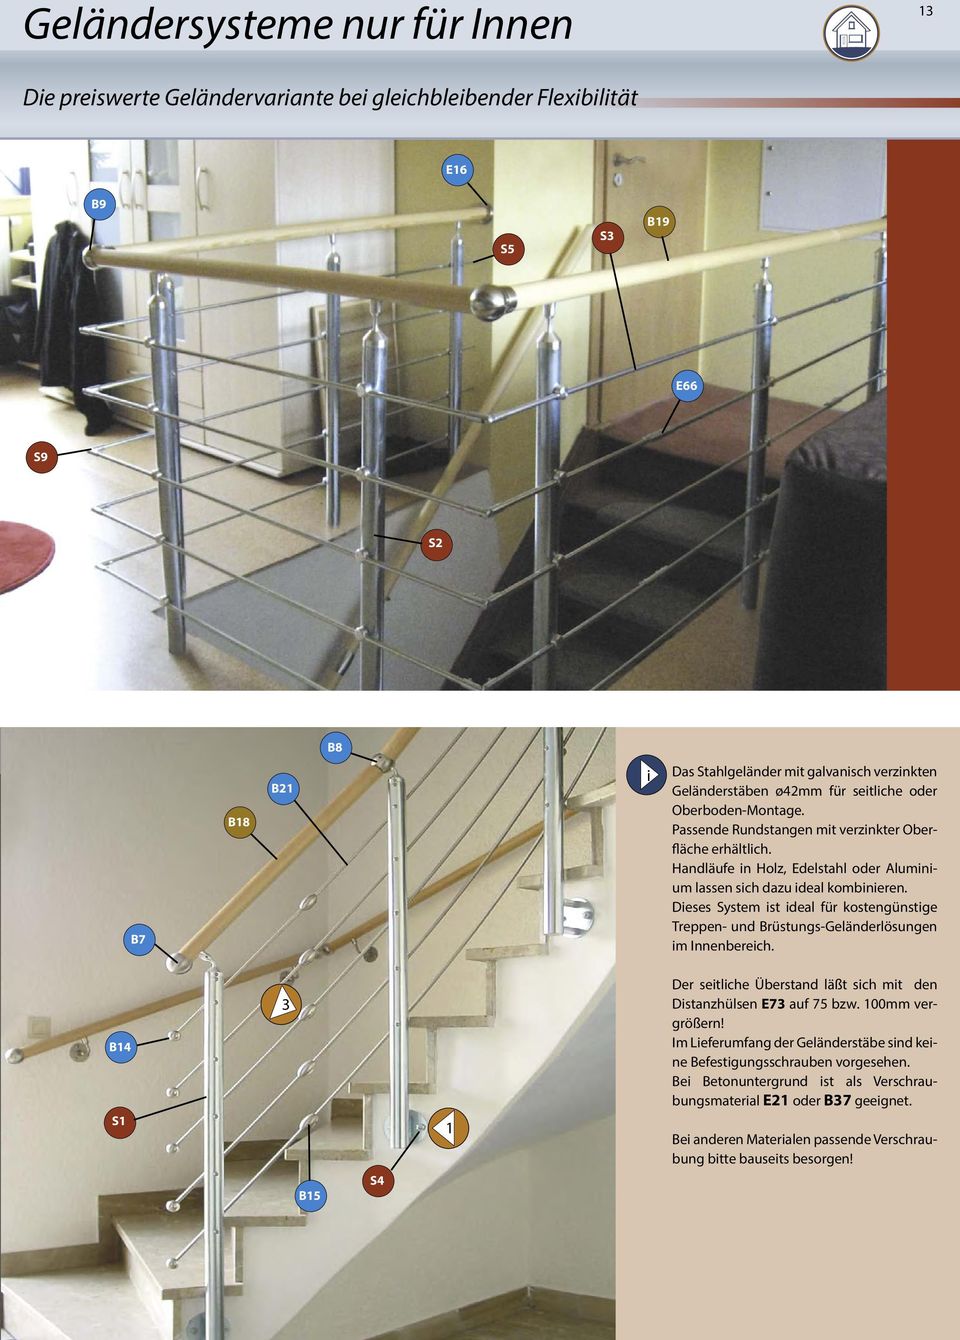 Dieses System ist ideal für kostengünstige Treppen- und Brüstungs-Geländerlösungen im Innenbereich. B4 S 3 B5 S4 Der seitliche Überstand läßt sich mit den Distanzhülsen E73 auf 75 bzw.